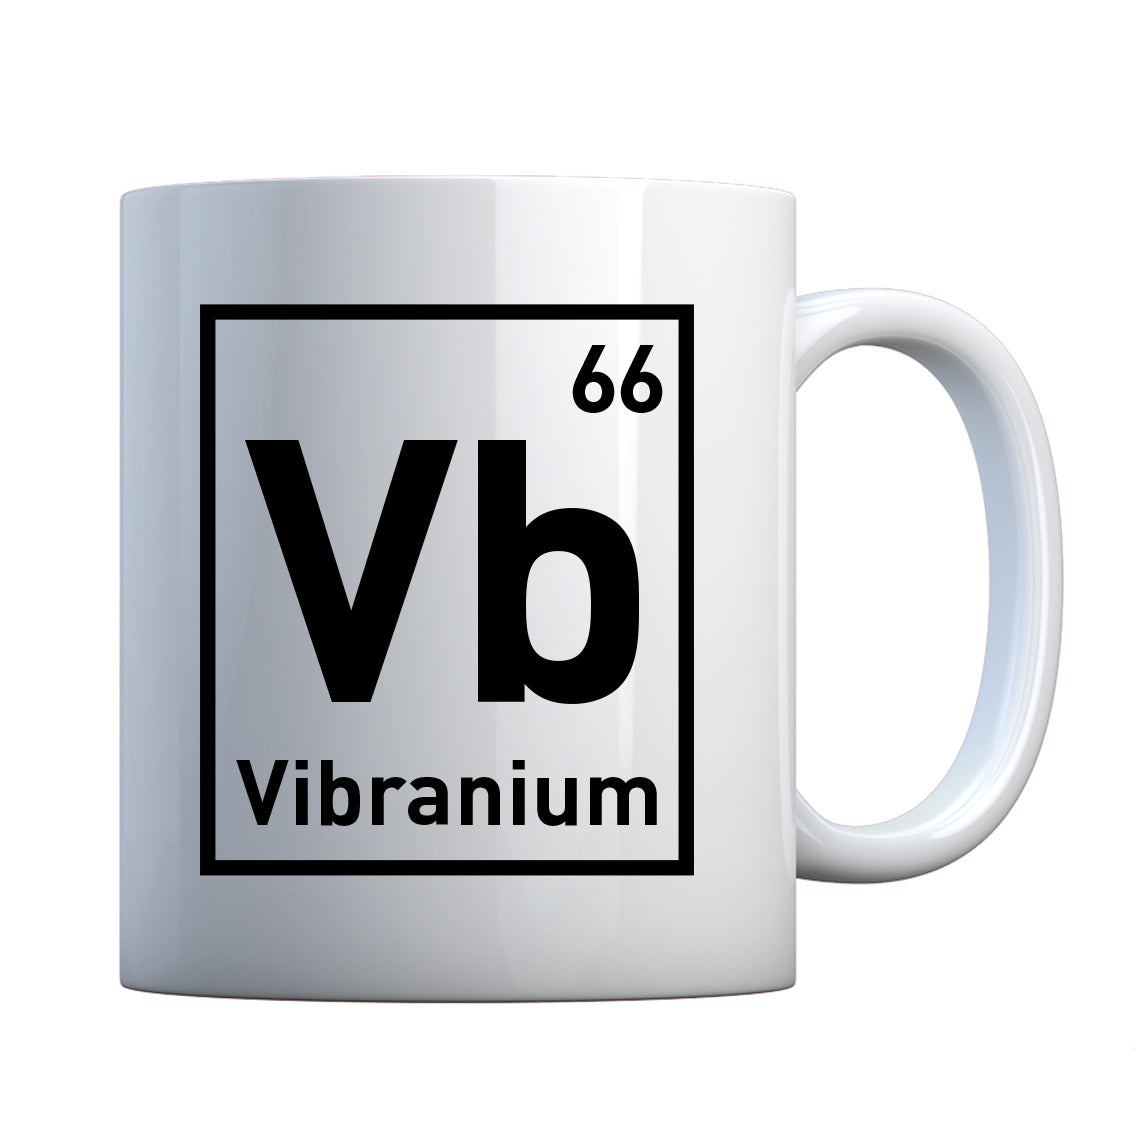 Mug Vibranium Ceramic Gift Mug